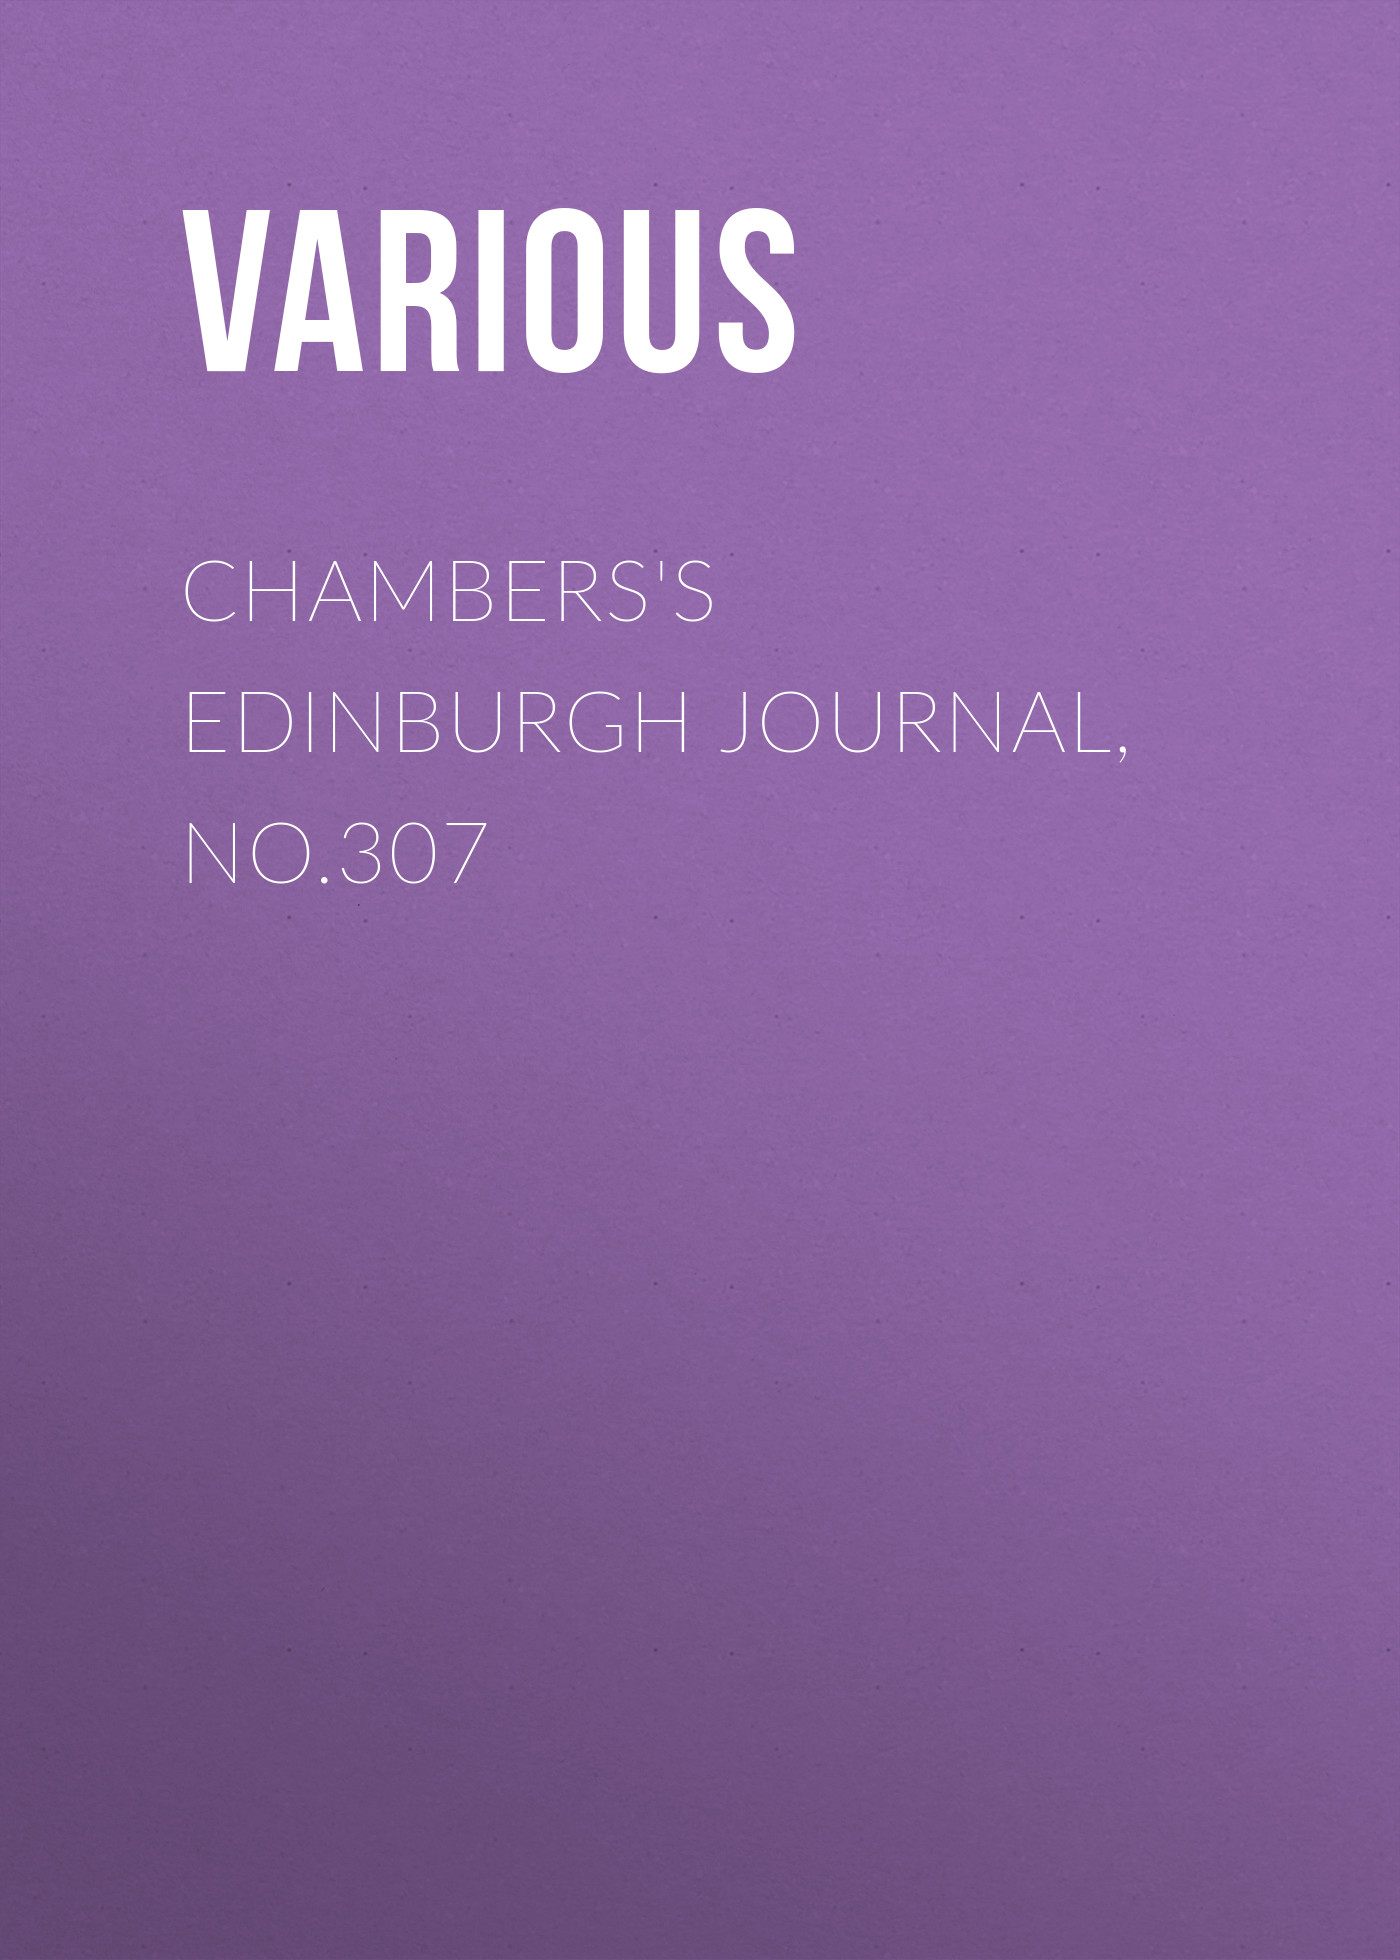 Книга Chambers's Edinburgh Journal, No.307 из серии , созданная  Various, может относится к жанру Журналы, Зарубежная образовательная литература. Стоимость электронной книги Chambers's Edinburgh Journal, No.307 с идентификатором 25571215 составляет 0 руб.